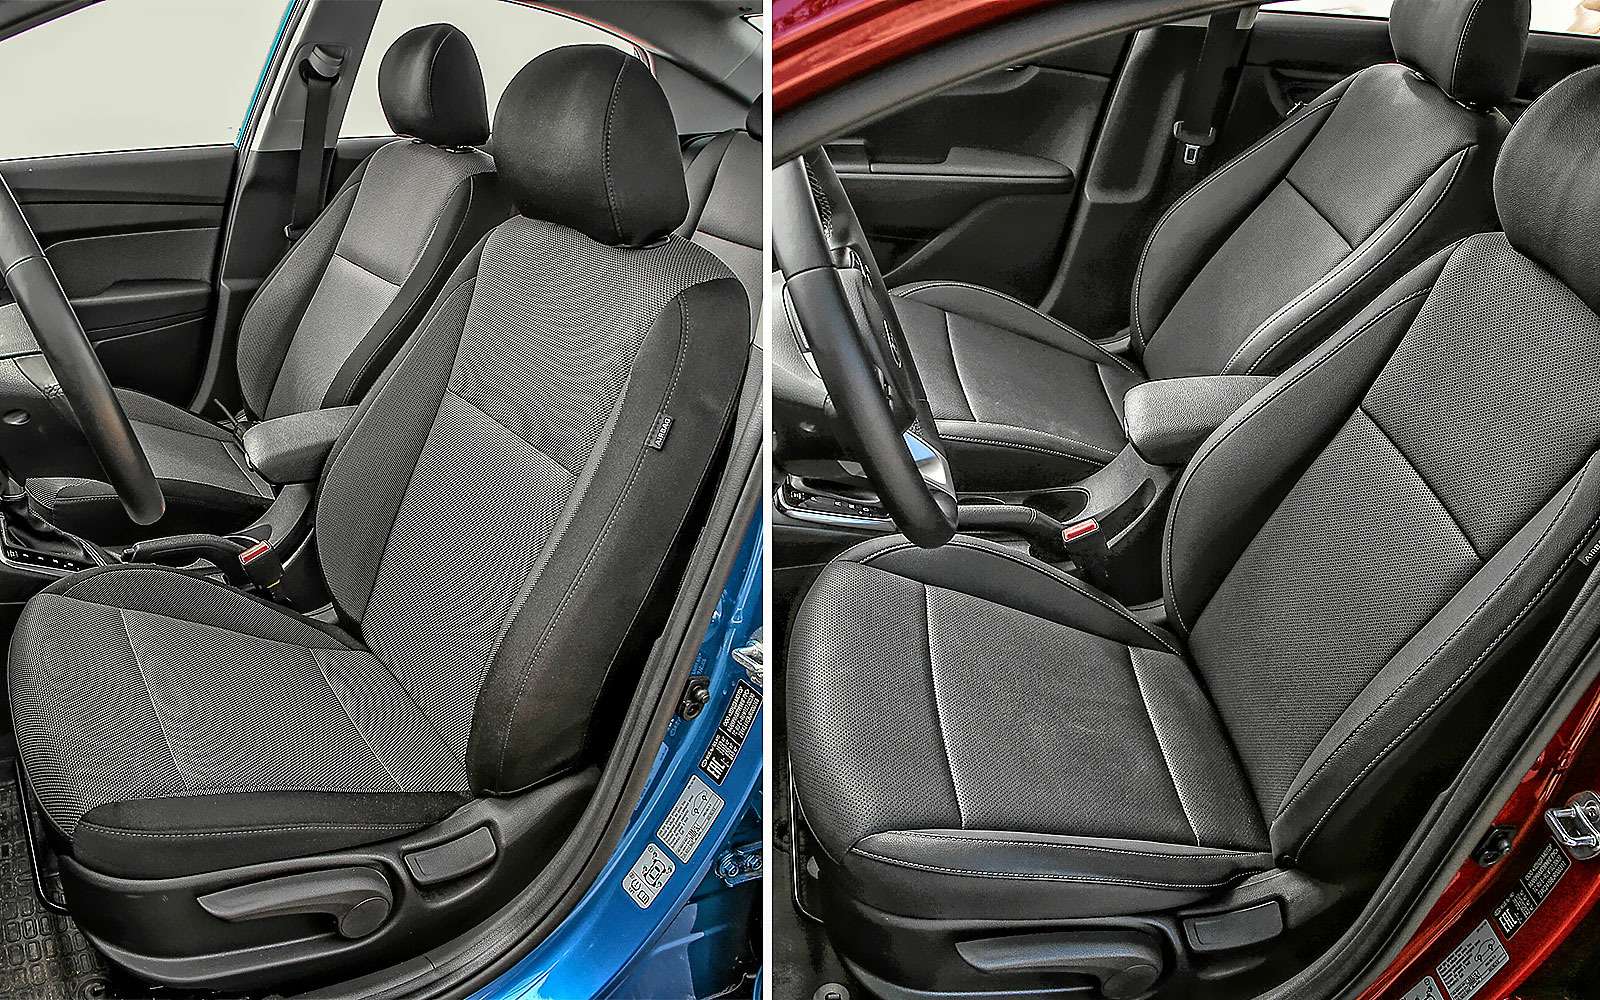 Обоим корейским седанам доступен практически одинаковый набор опций, но кое-какие отличия все-таки есть. Например, если вы захотите кожаный салон – придется остановить выбор на Kia Rio в максимальной комплектации Premium. Максимально упакованный Hyundai Solaris комплектуется тряпичным салоном.